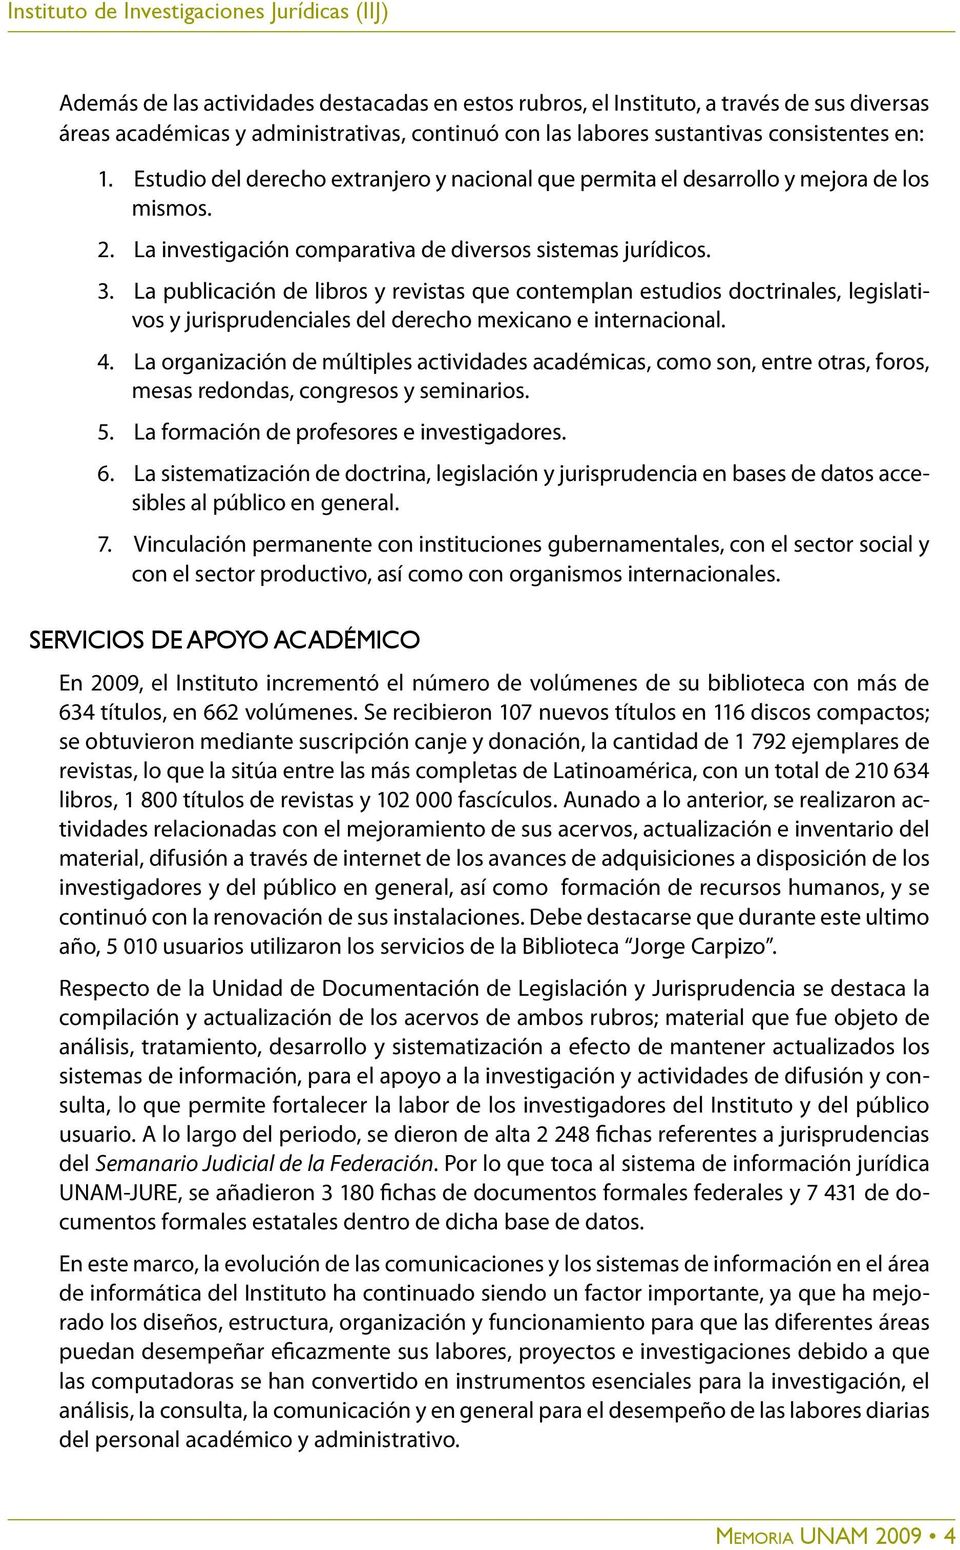 La publicación de libros y revistas que contemplan estudios doctrinales, legislativos y jurisprudenciales del derecho mexicano e internacional.